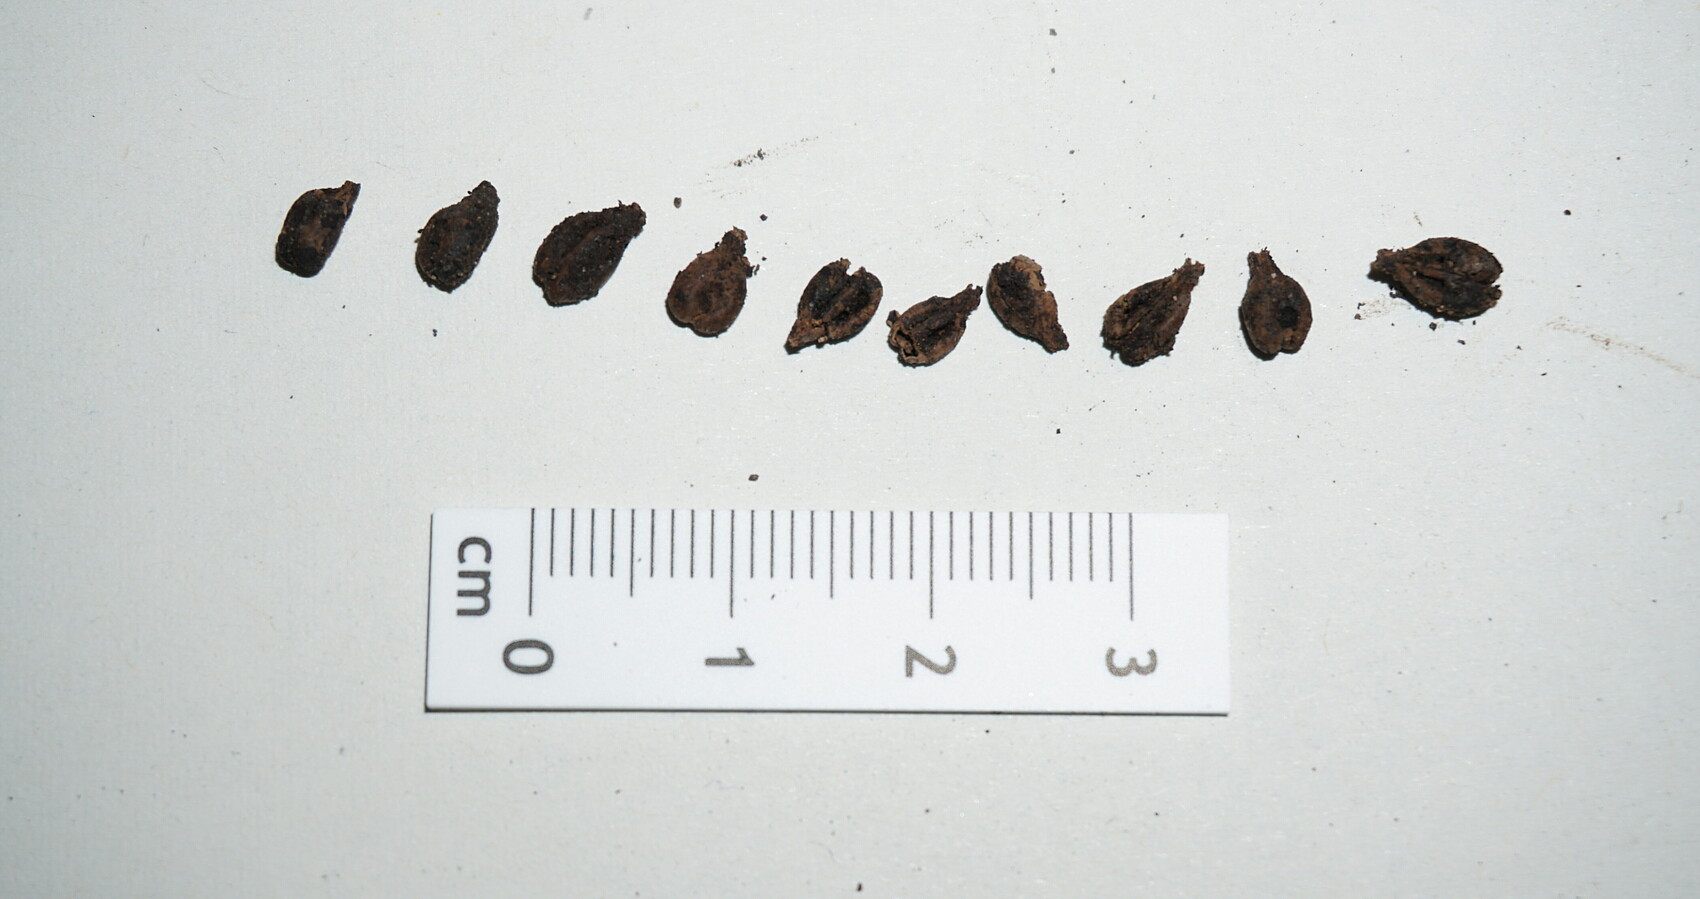 Einige der erhaltenen Traubenkerne aus dem Tresterrest